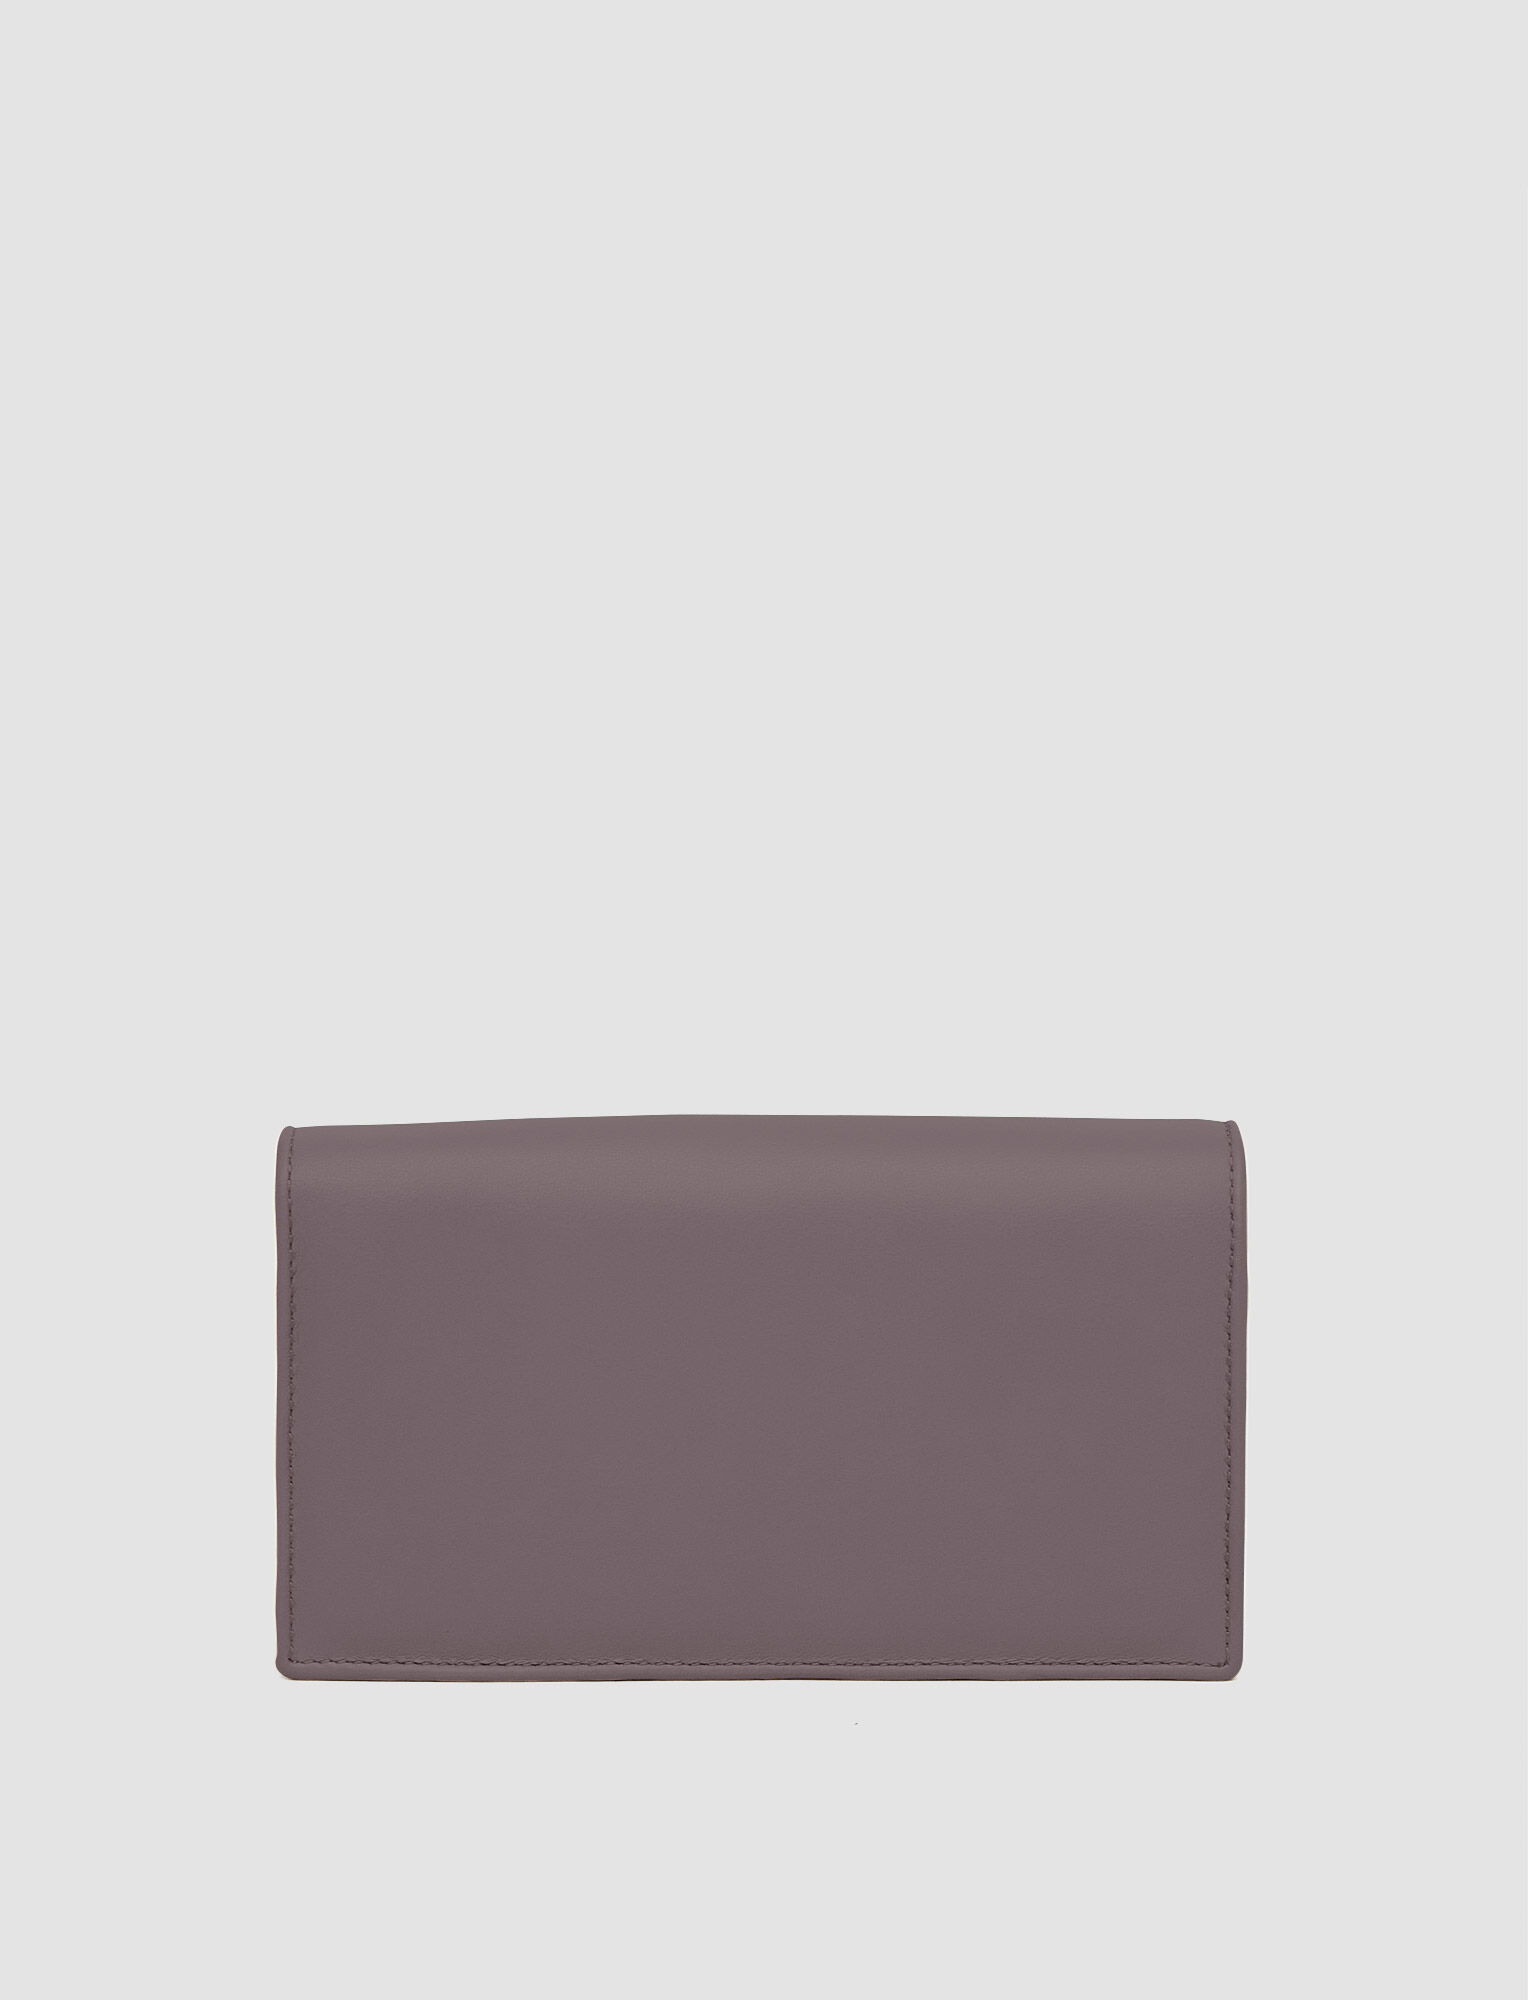 Joseph, Leather Shoulder Wallet, in Truffle